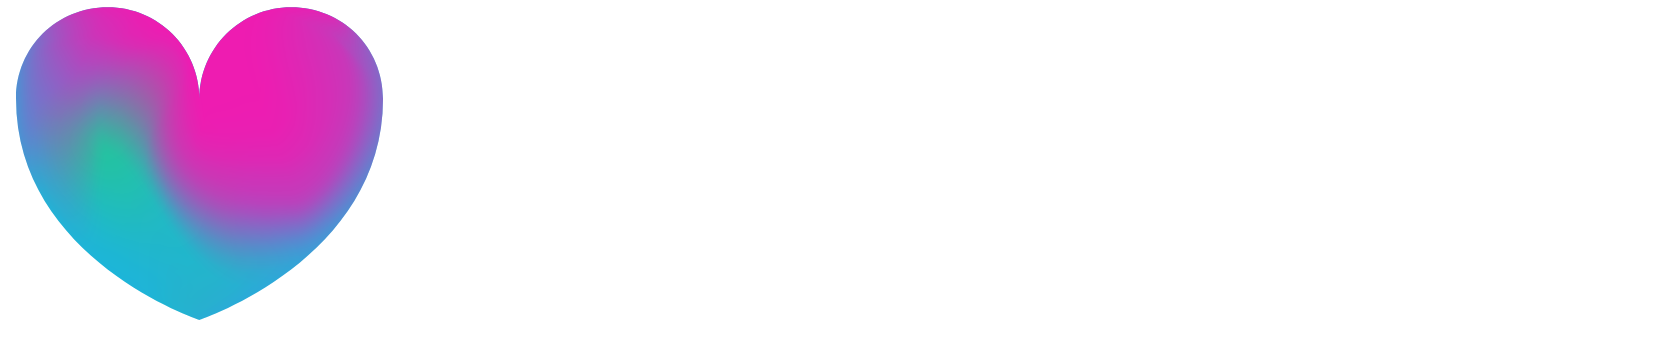 Babylon Holdings logo large for dark backgrounds (transparent PNG)